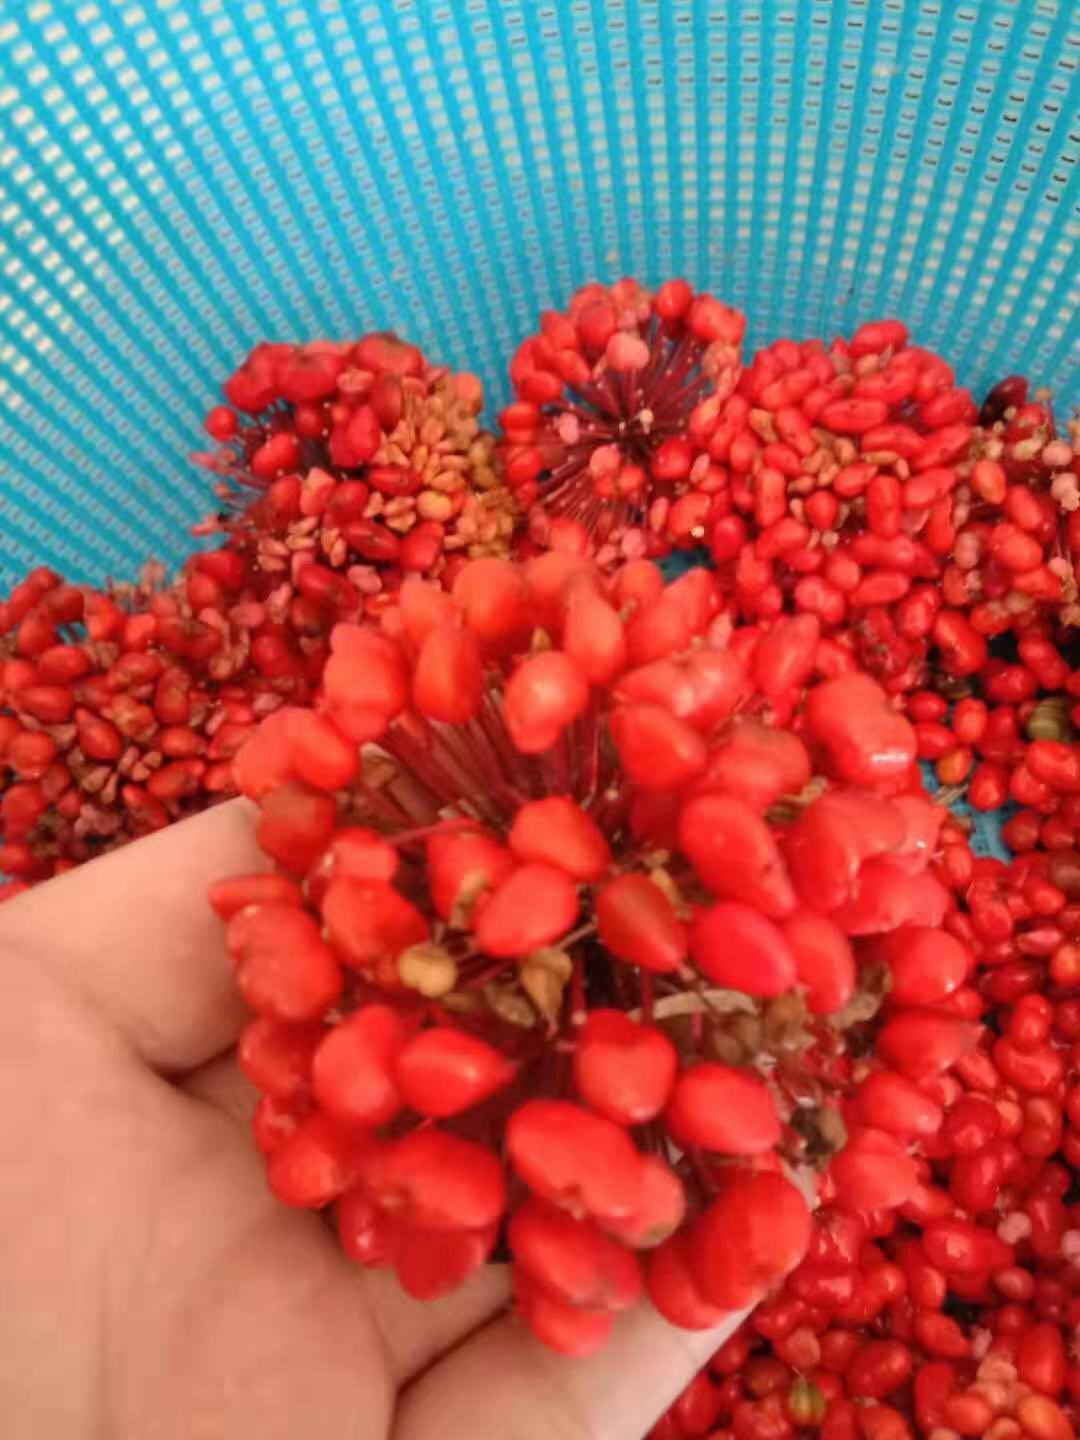 文山市 云南文山三七种子，发芽率 98%，产量高，提供种植技术支持